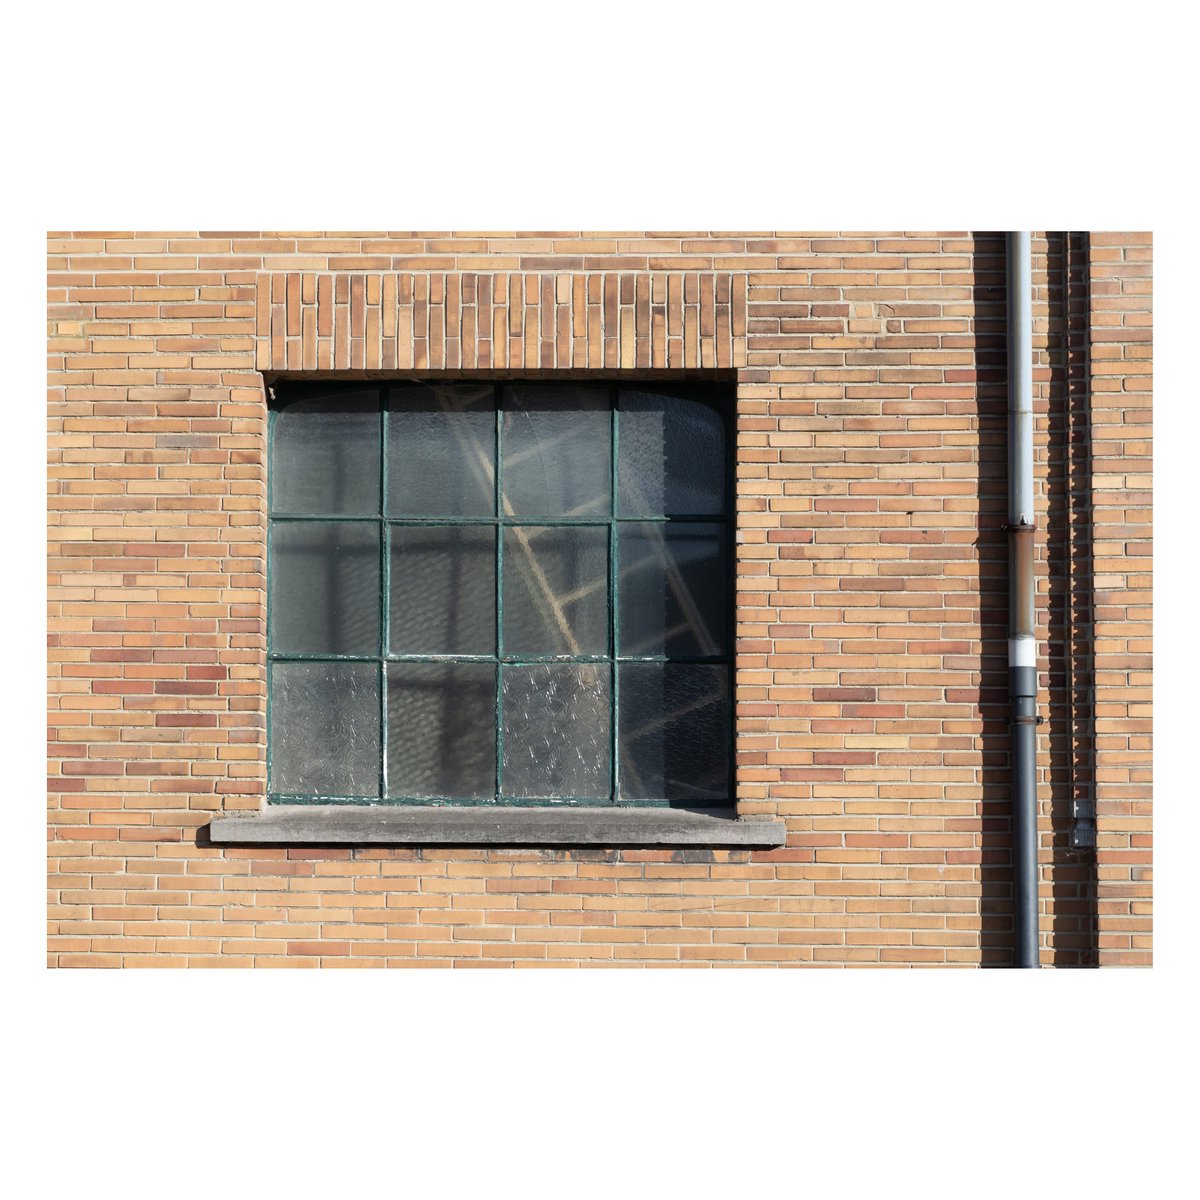 🔶 Indoor Ladder

Août 2020.

#minimalism
#minimalphotography
#streetphotography
#colorphotography
#streetphoto_color
#belgiumphotographer
#belgium
#sonyalpha
#sonya7iii
#benlorthi